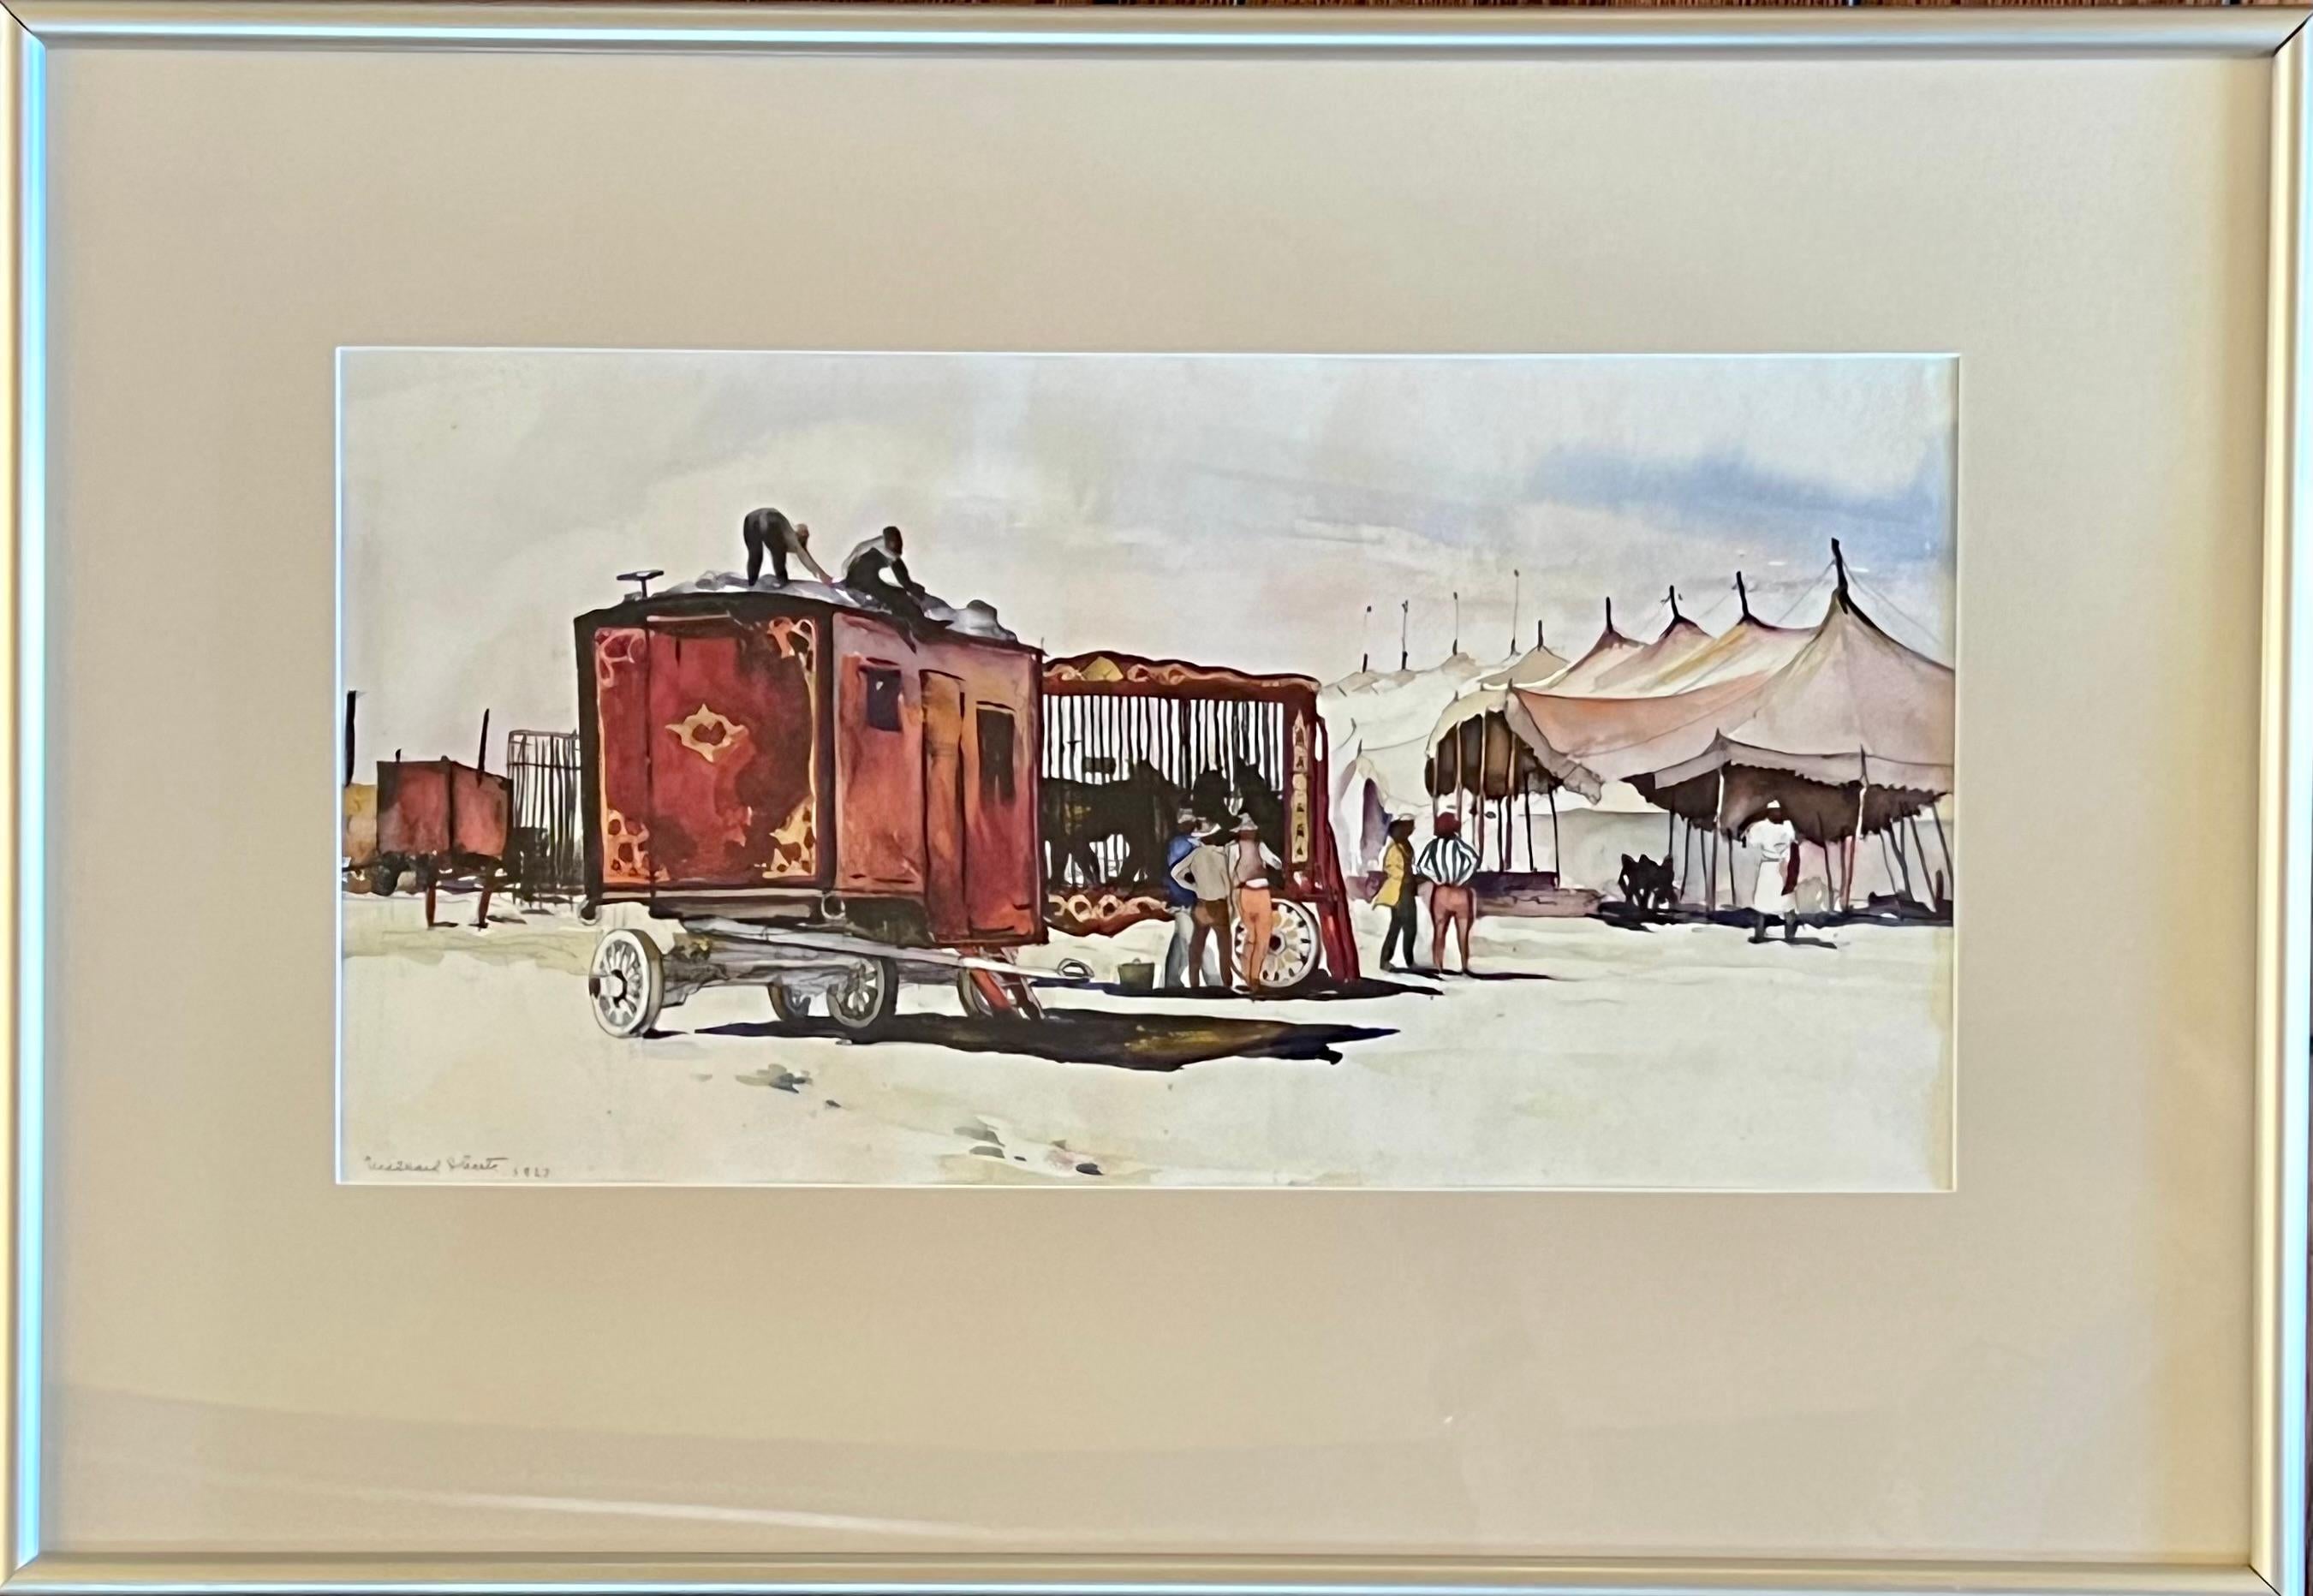 Wagons de cirque - Painting de Millard Sheets